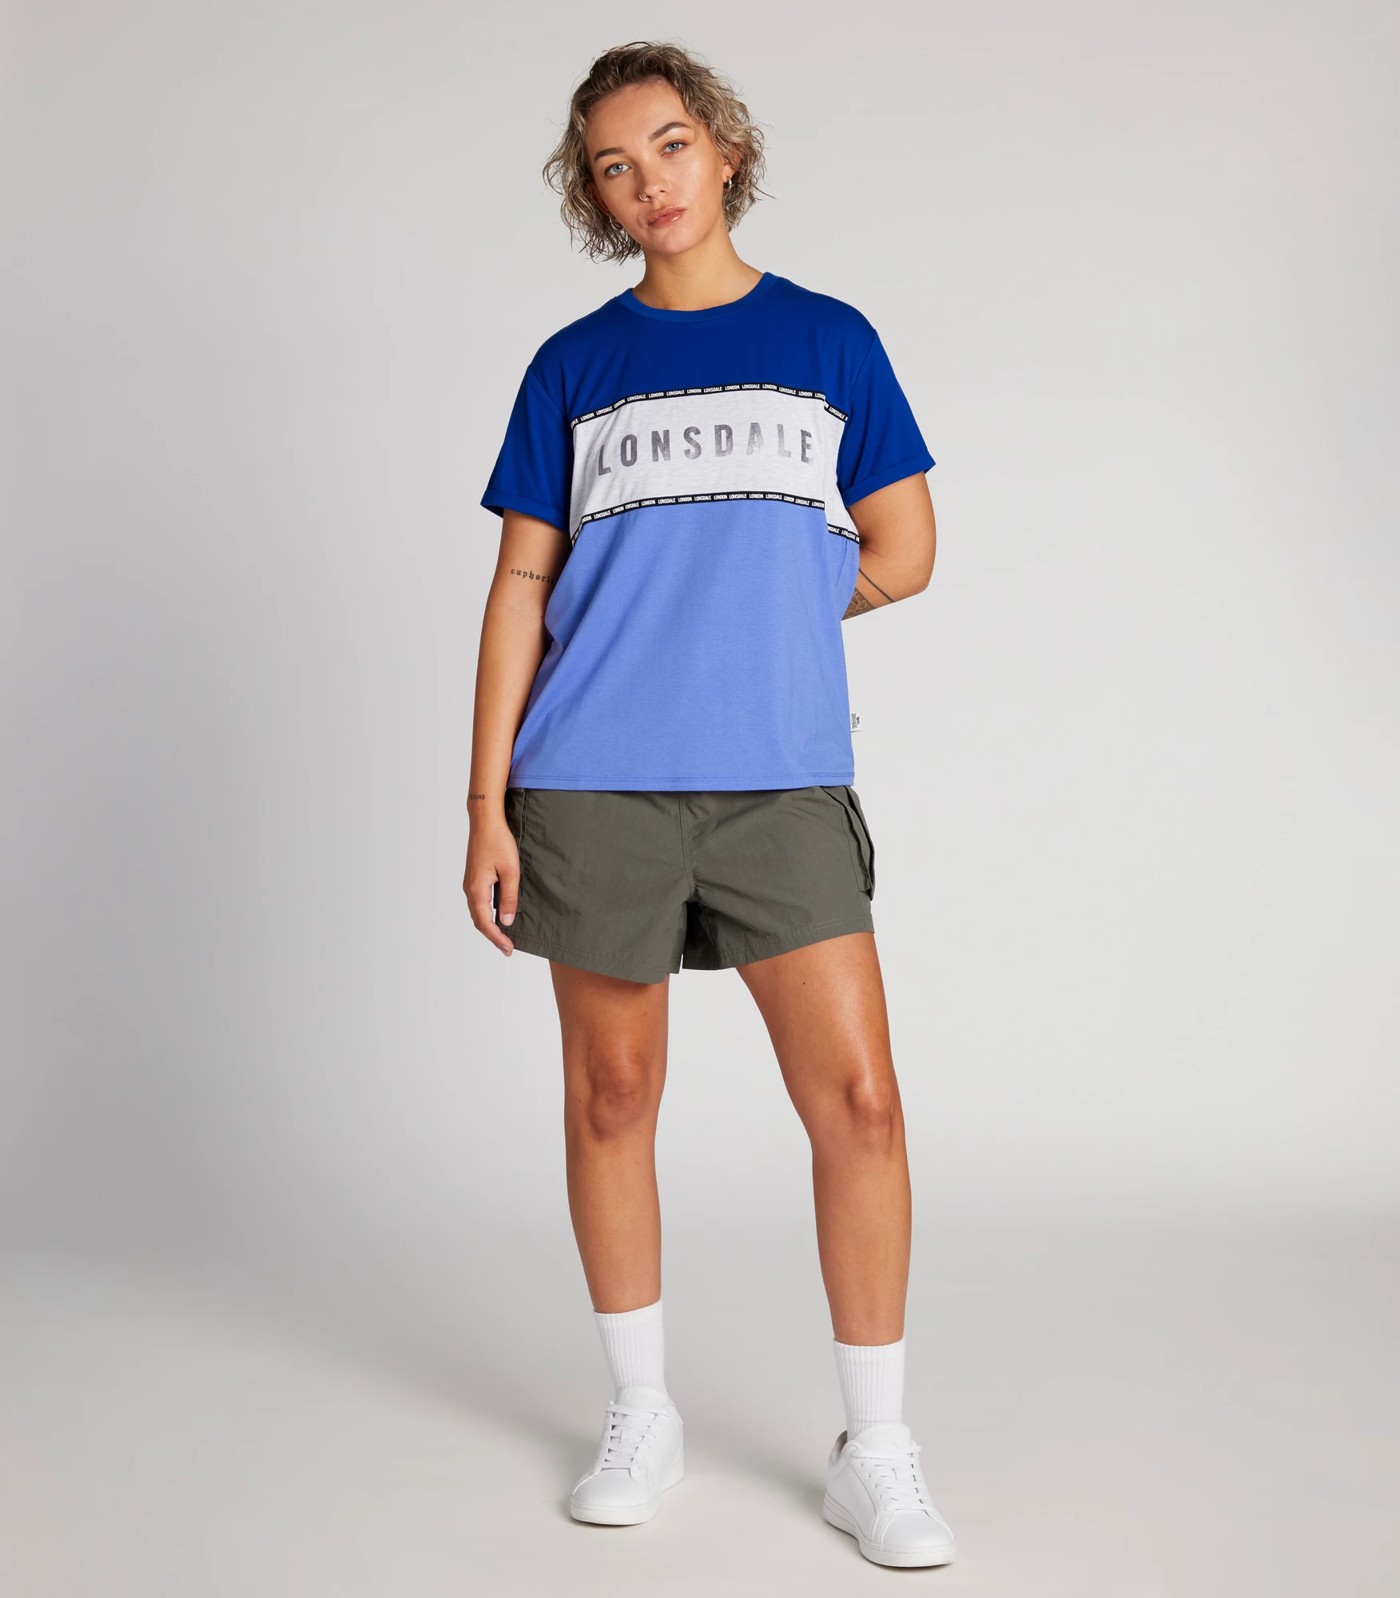 Grassington T-Shirt - Lonsdale London | Target Australia